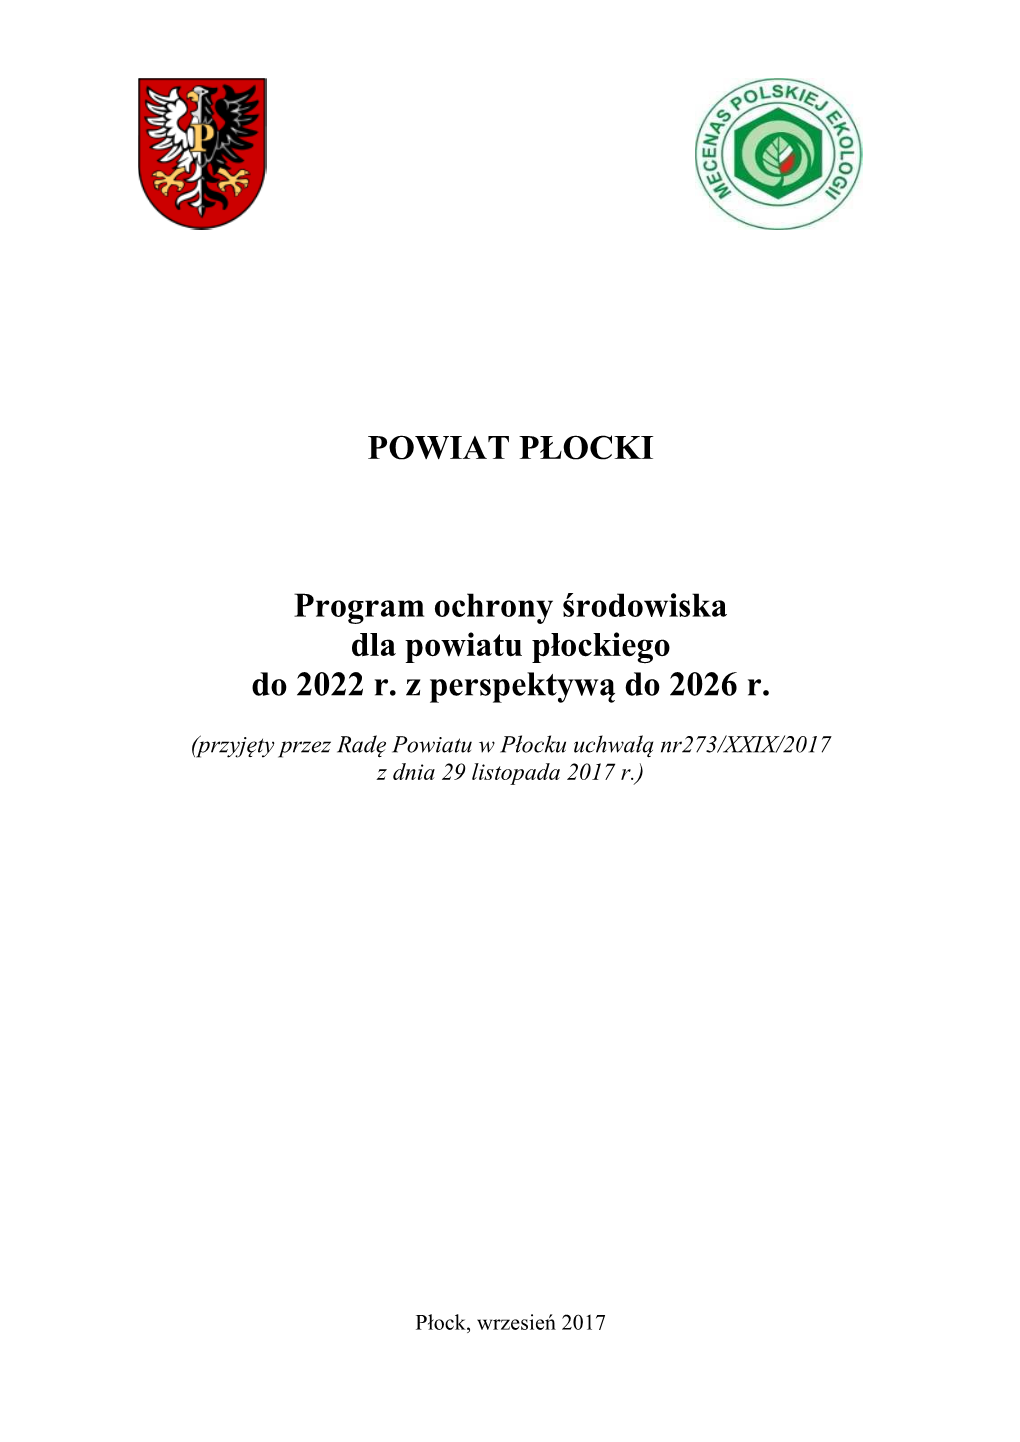 POWIAT PŁOCKI Program Ochrony Środowiska Dla Powiatu Płockiego